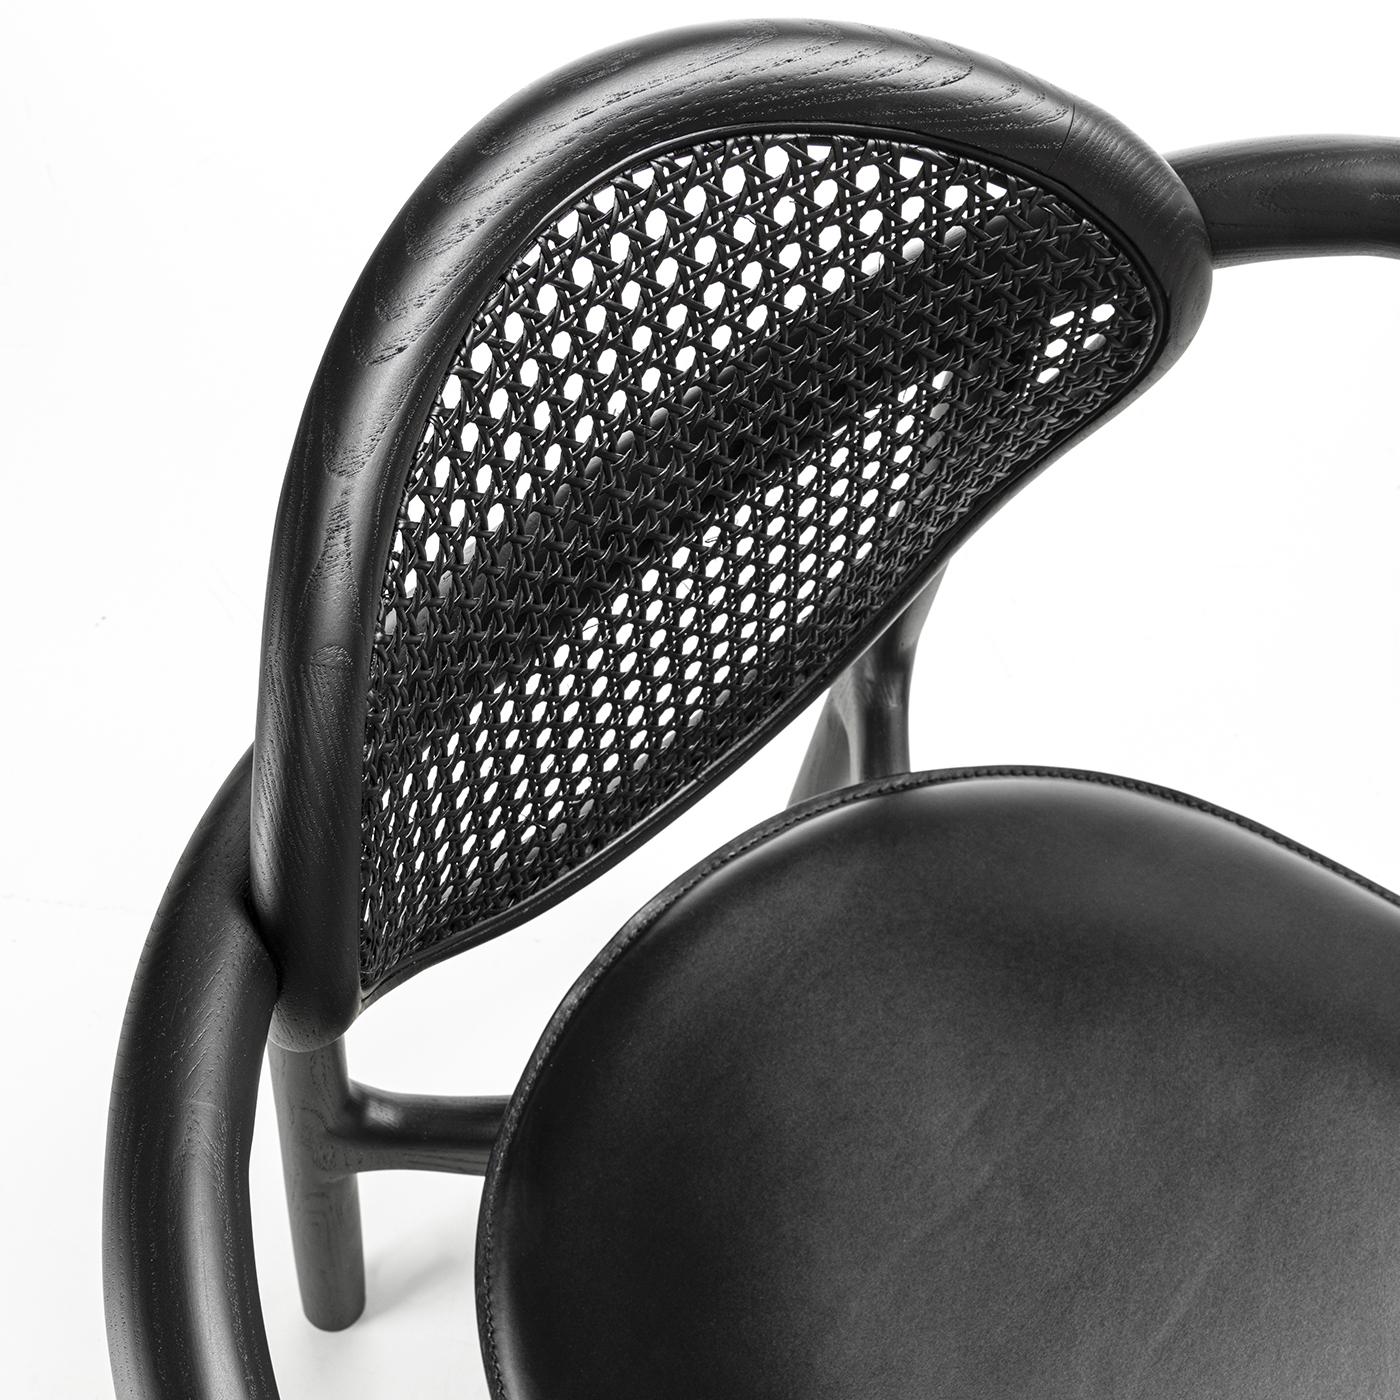 Marlena est un fauteuil extrêmement élégant avec une structure en bois massif à sections irrégulières disponible en frêne ou en noyer Canaletto. Le dossier en paille de Wien est disponible en naturel ou en noir. Le siège est recouvert de différents